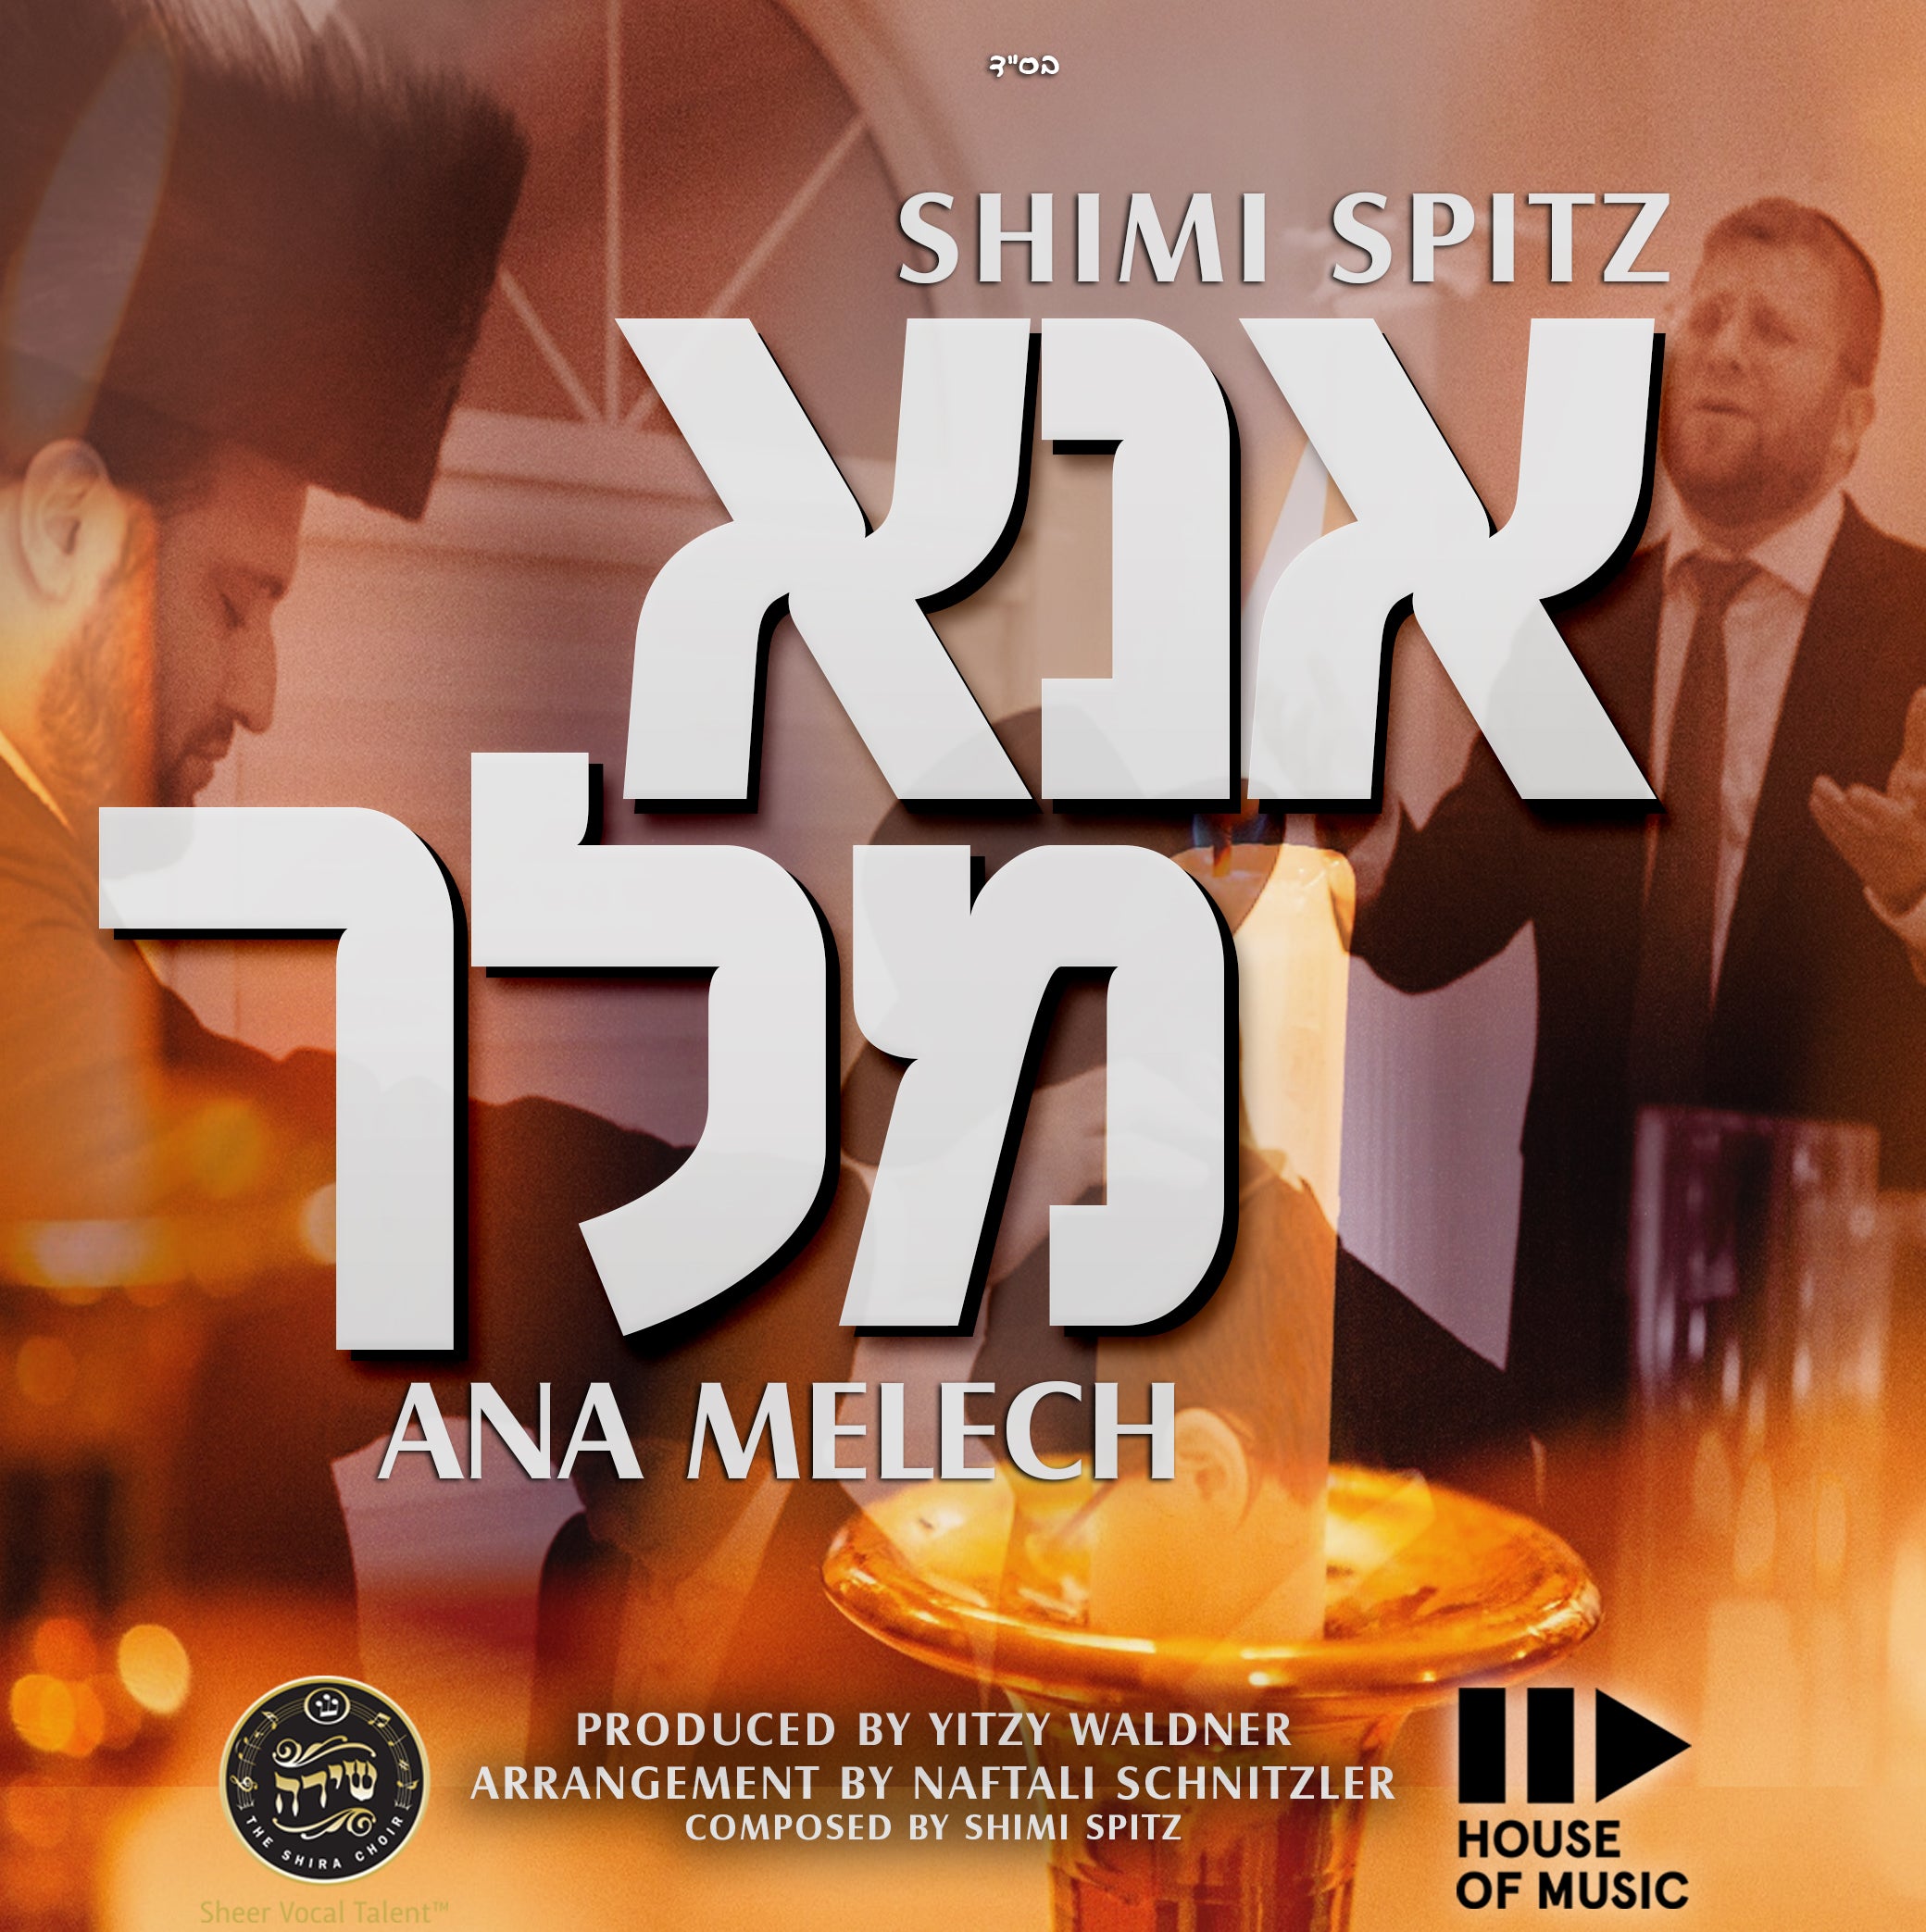 Shimi Spitz - Ana Melech (Single)